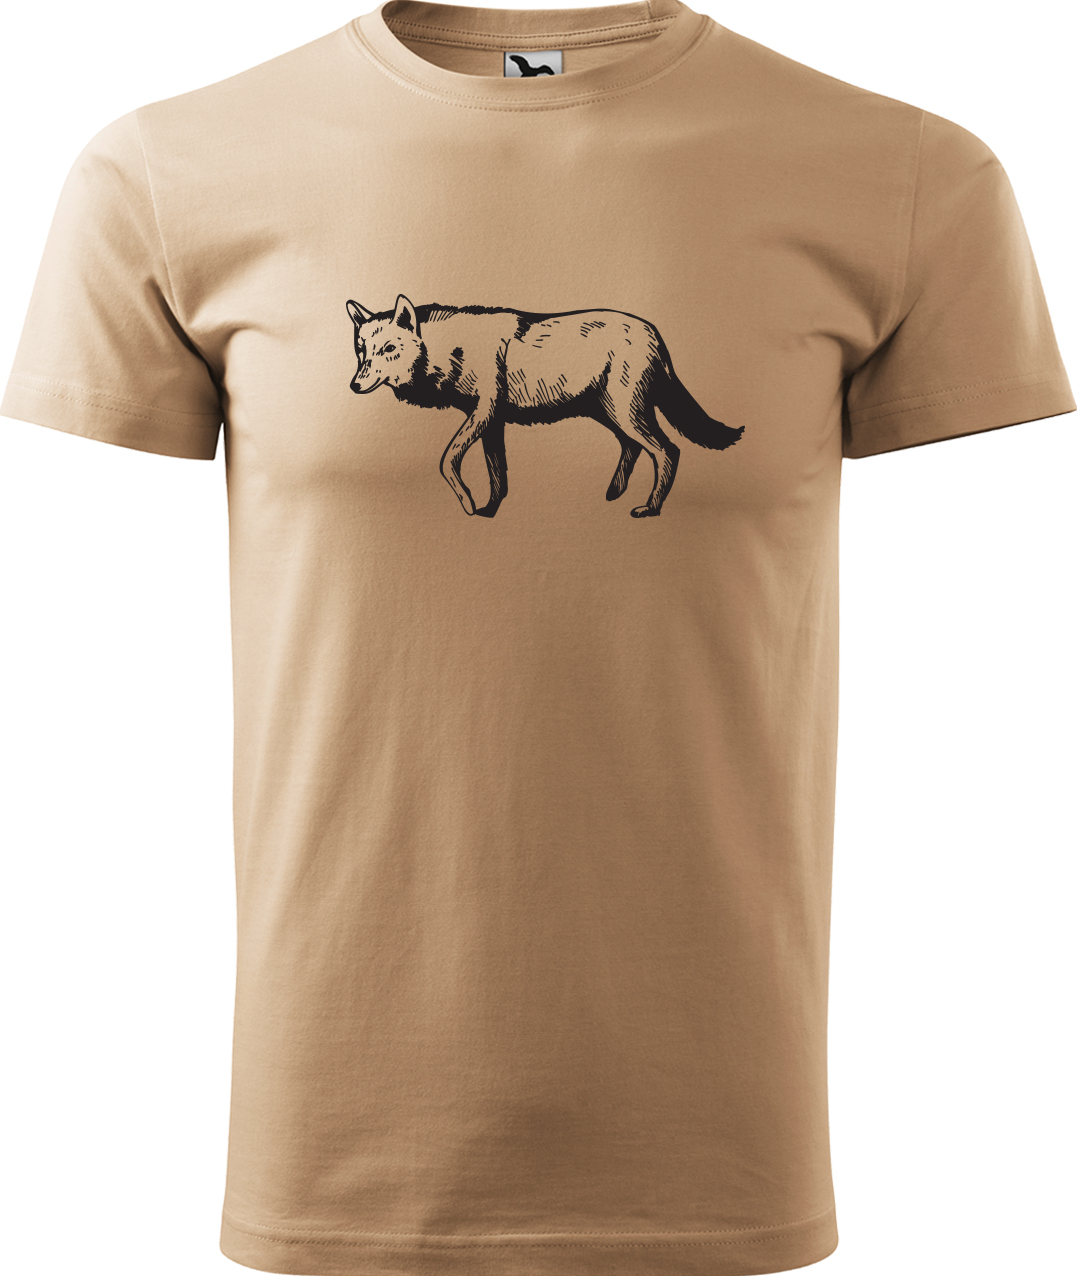 Pánské tričko s vlkem - Vlk Velikost: L, Barva: Písková (08), Střih: pánský